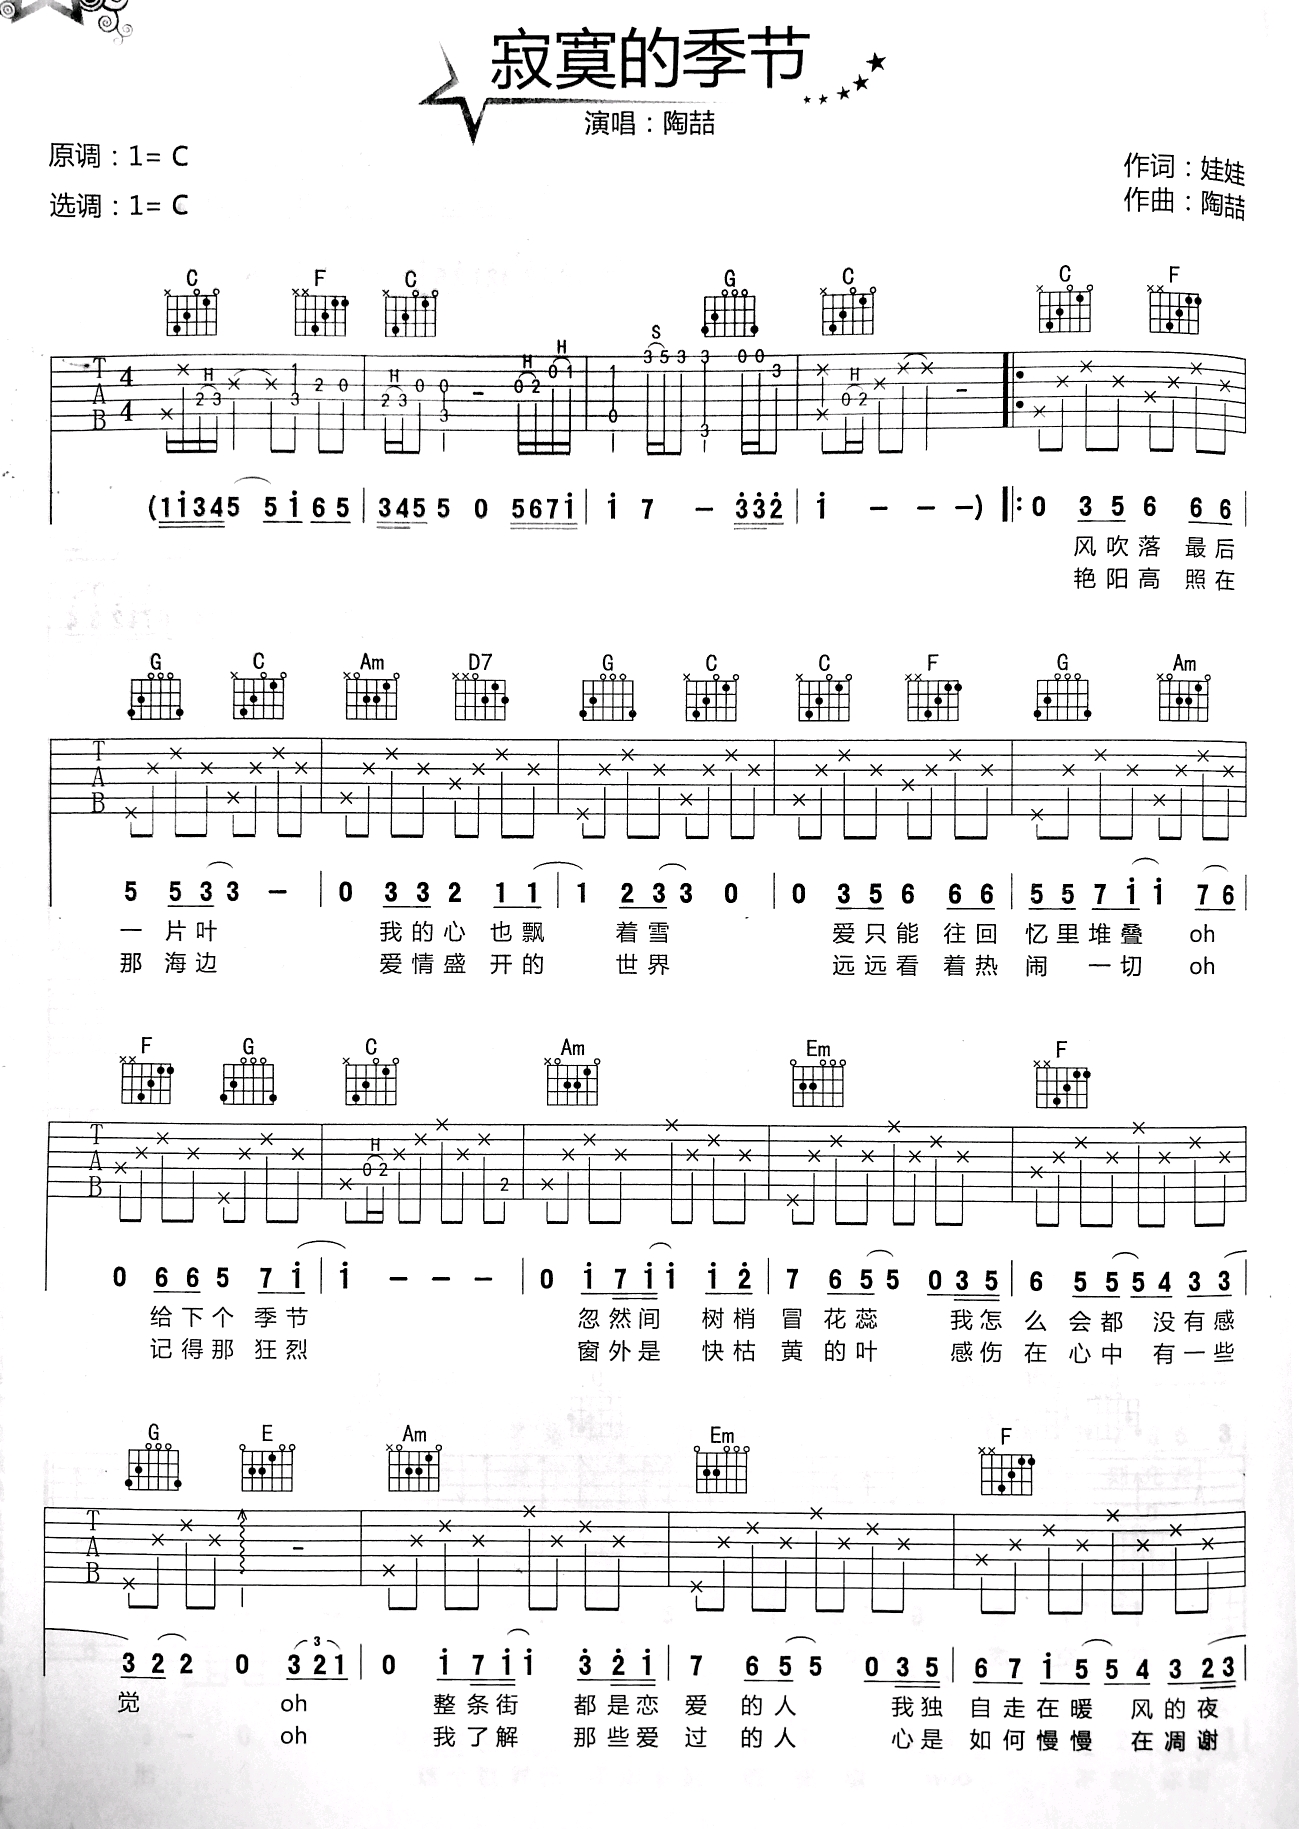 陶喆成名曲吉他谱《寂寞的季节》-吉他曲谱 - 乐器学习网